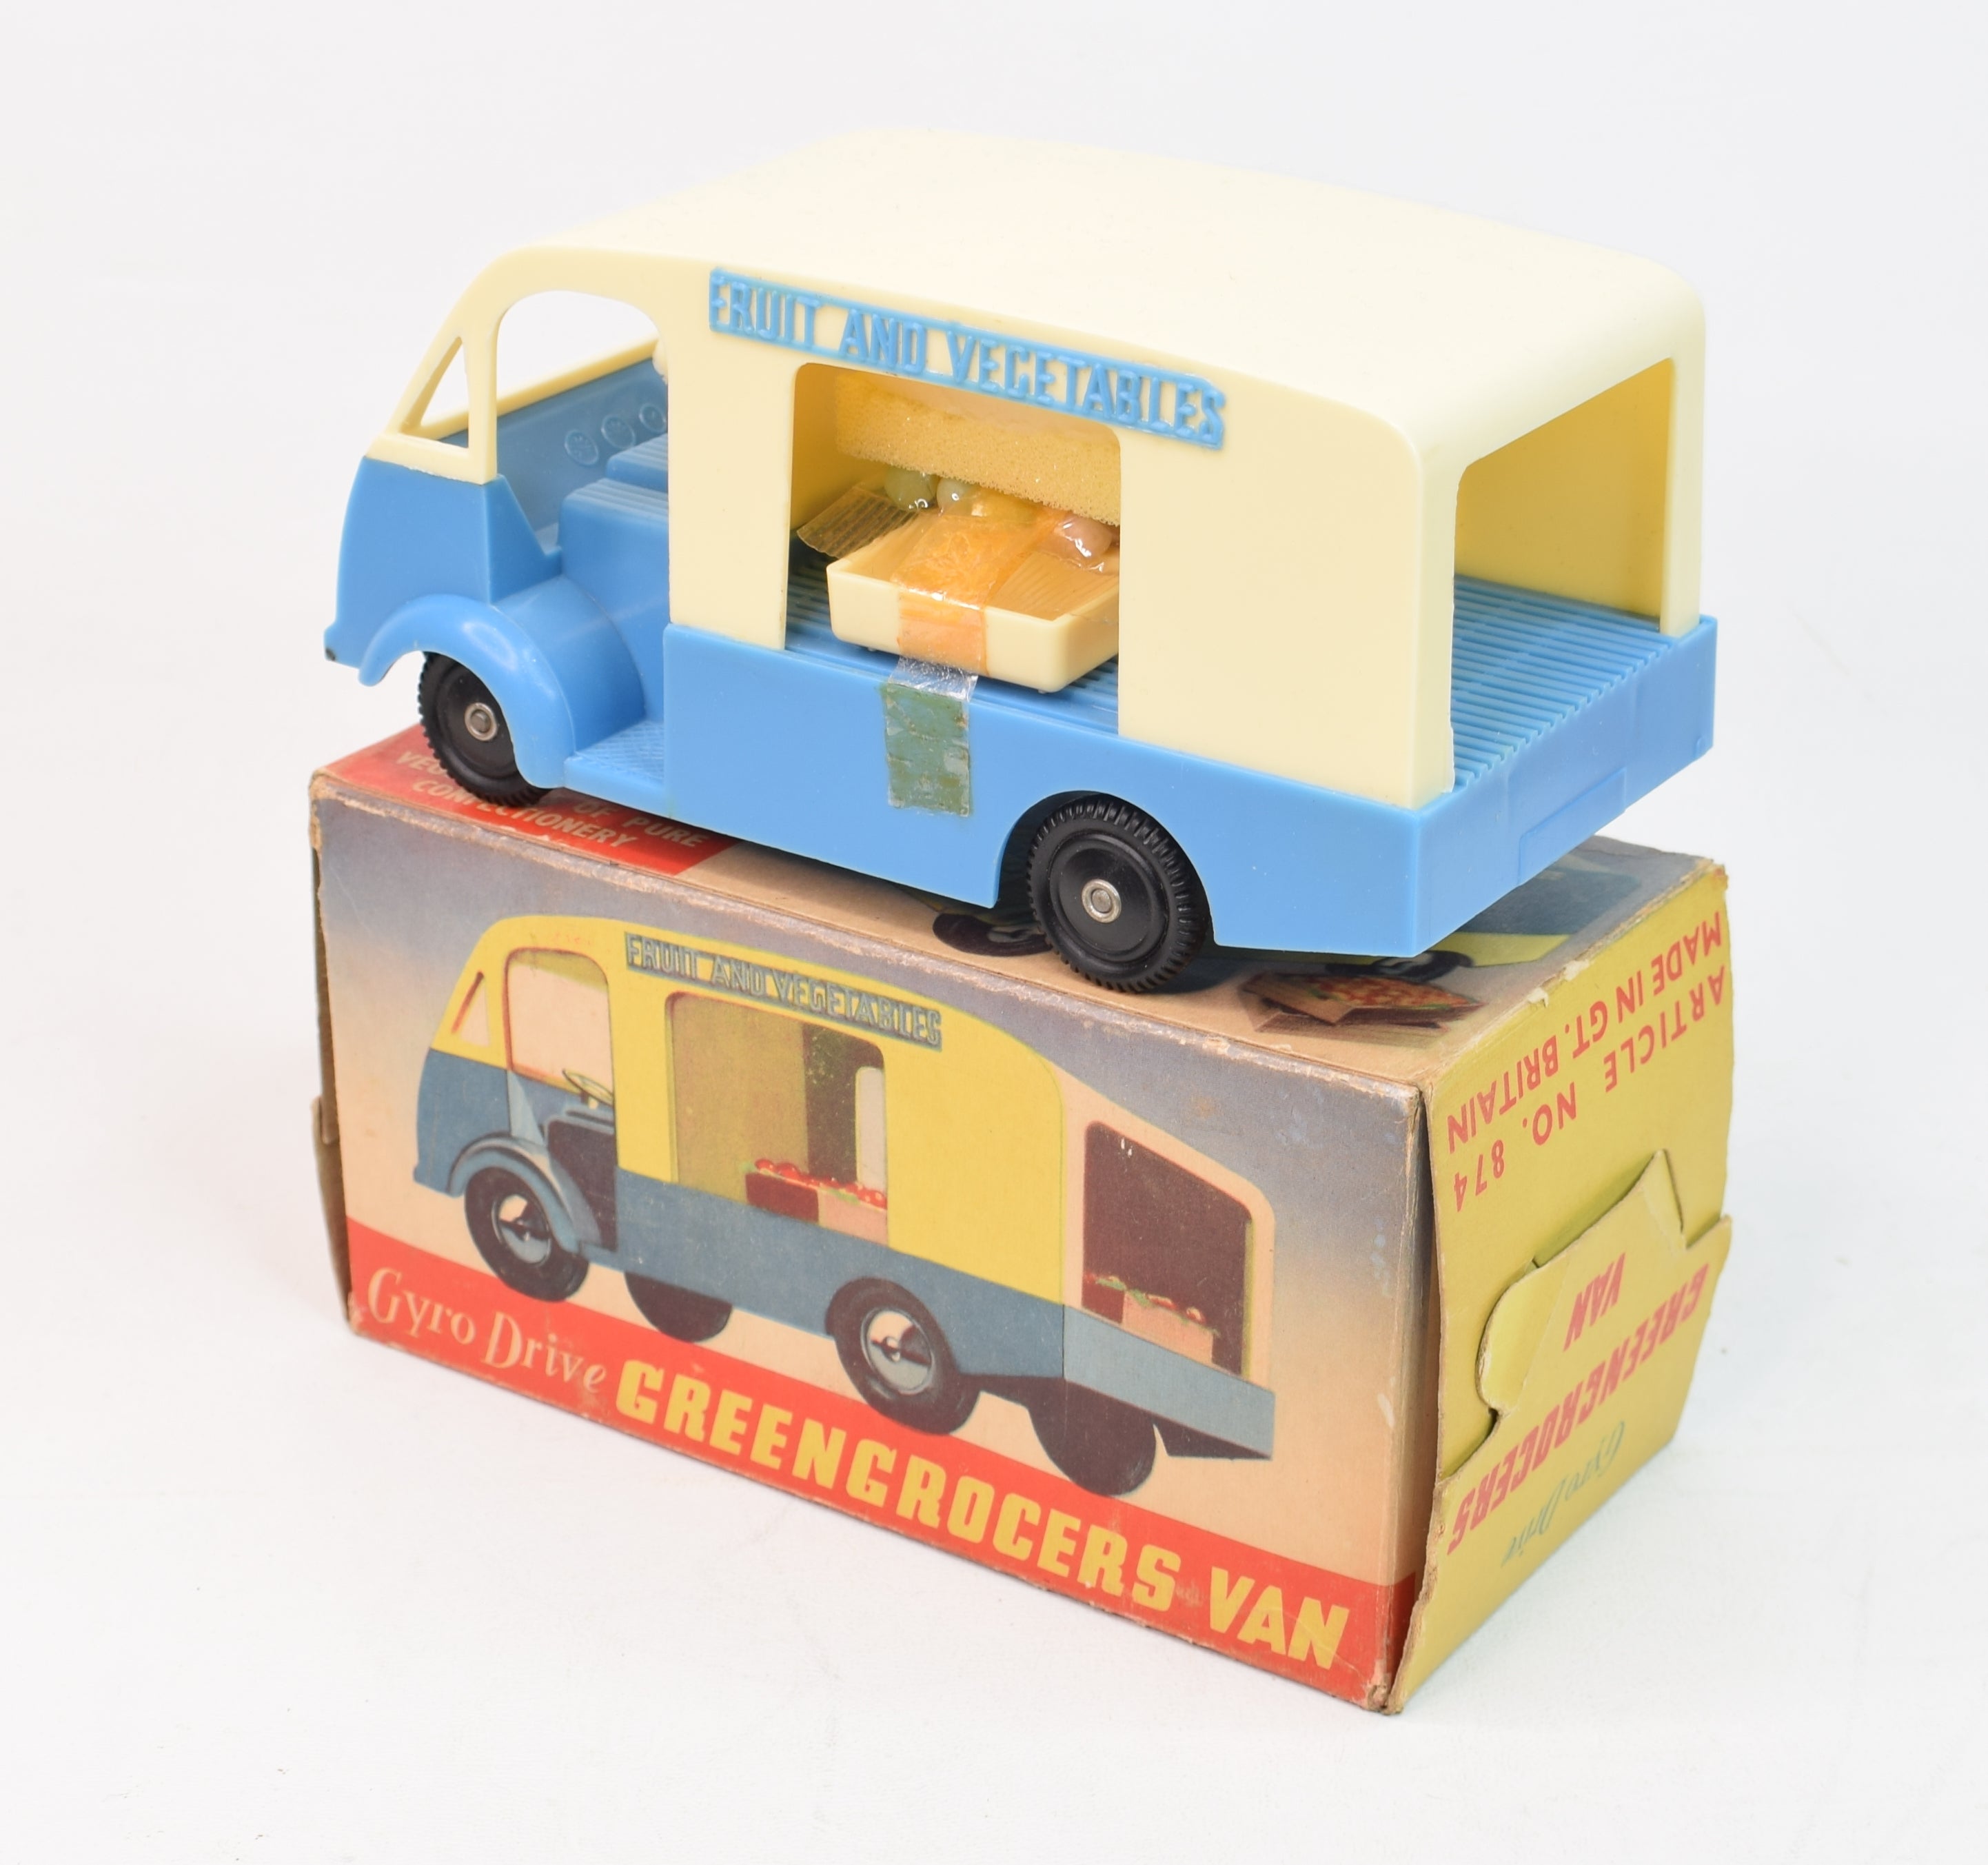 Gyro Drive No.874 Greengrocers van Mint/Boxed – JK DIE-CAST MODELS